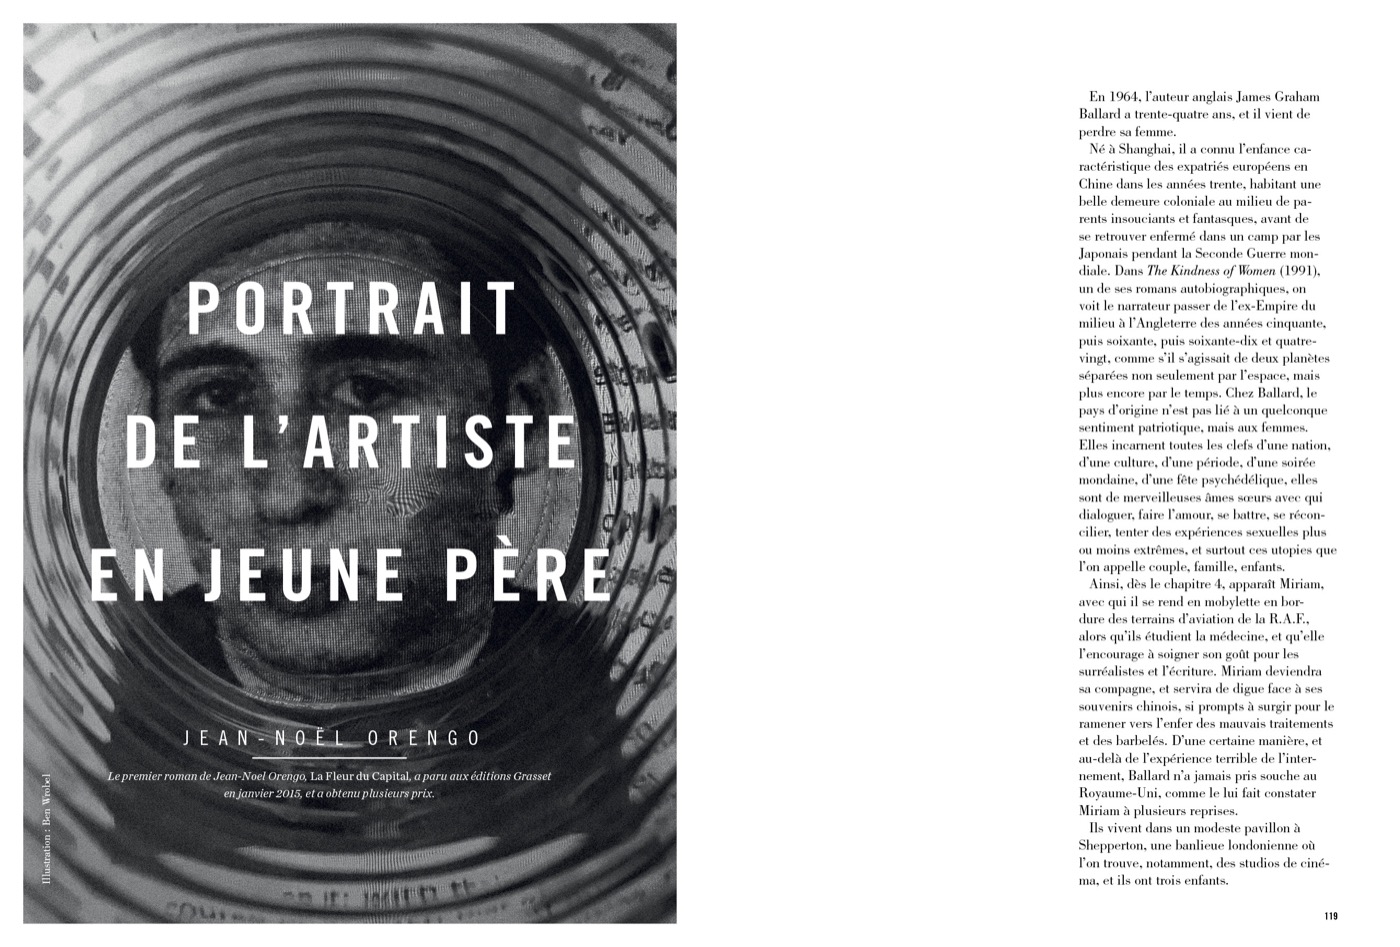 Texte de Jean-Noël Orengo, Portrait de l’artiste en jeune père